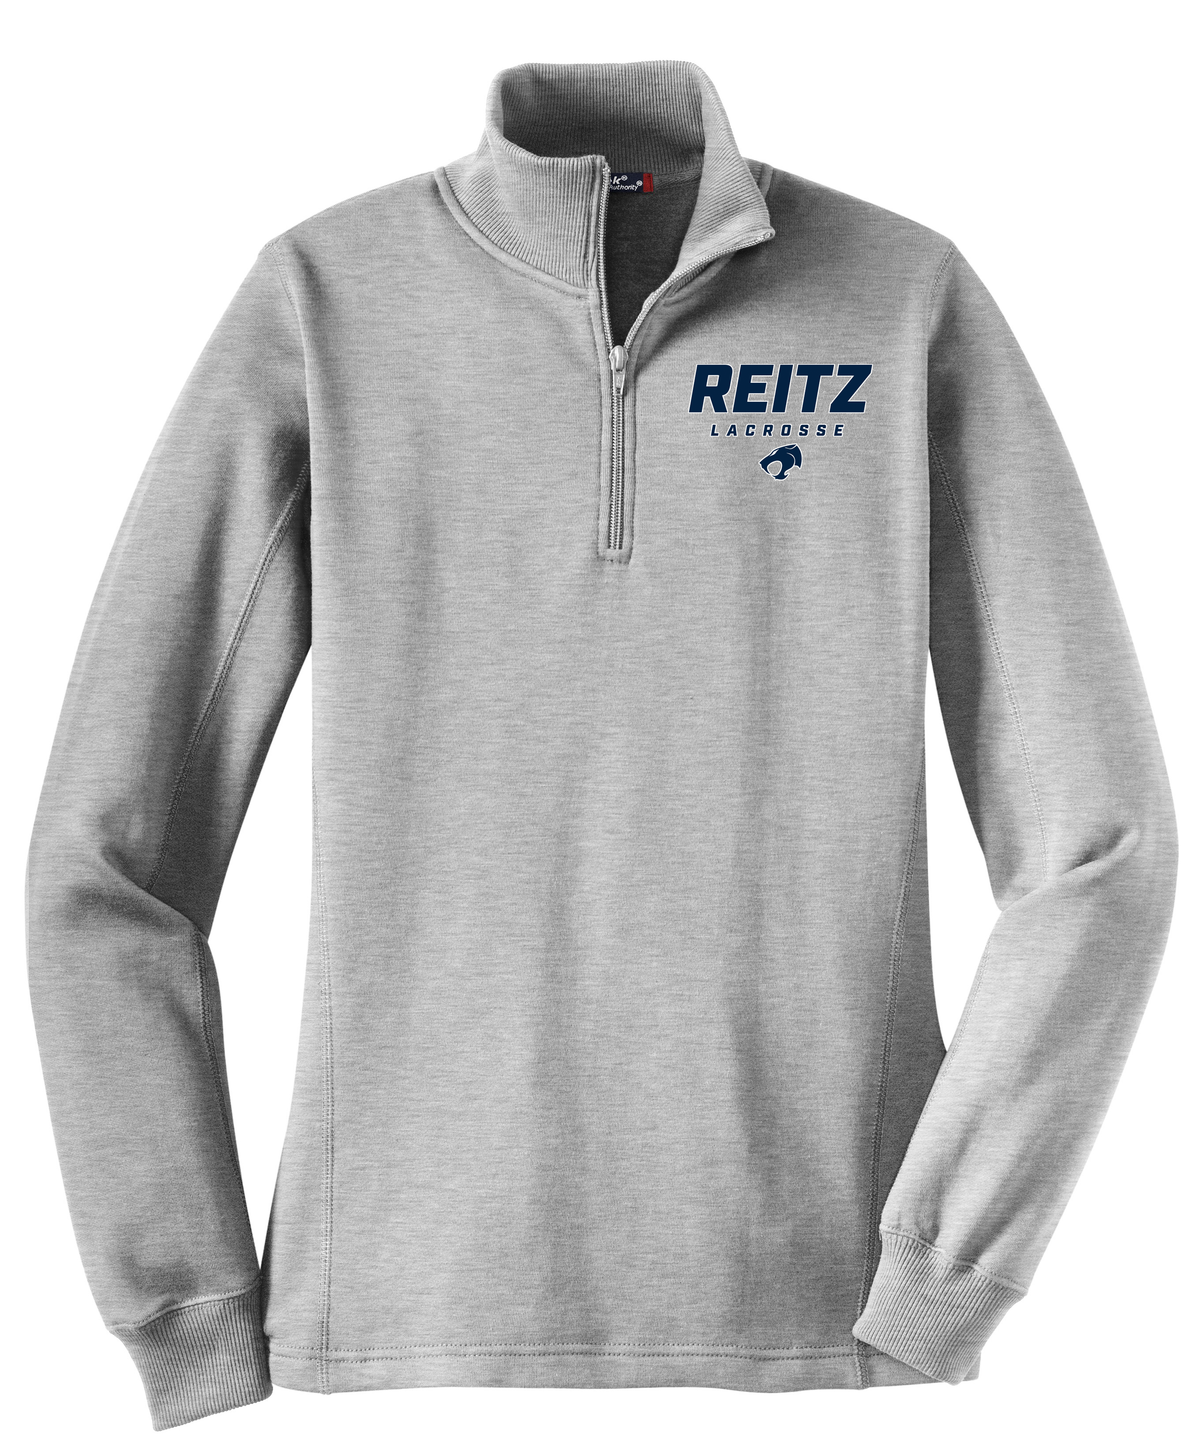 Reitz Lacrosse Women's Heather Grey 1/4 Zip Fleece